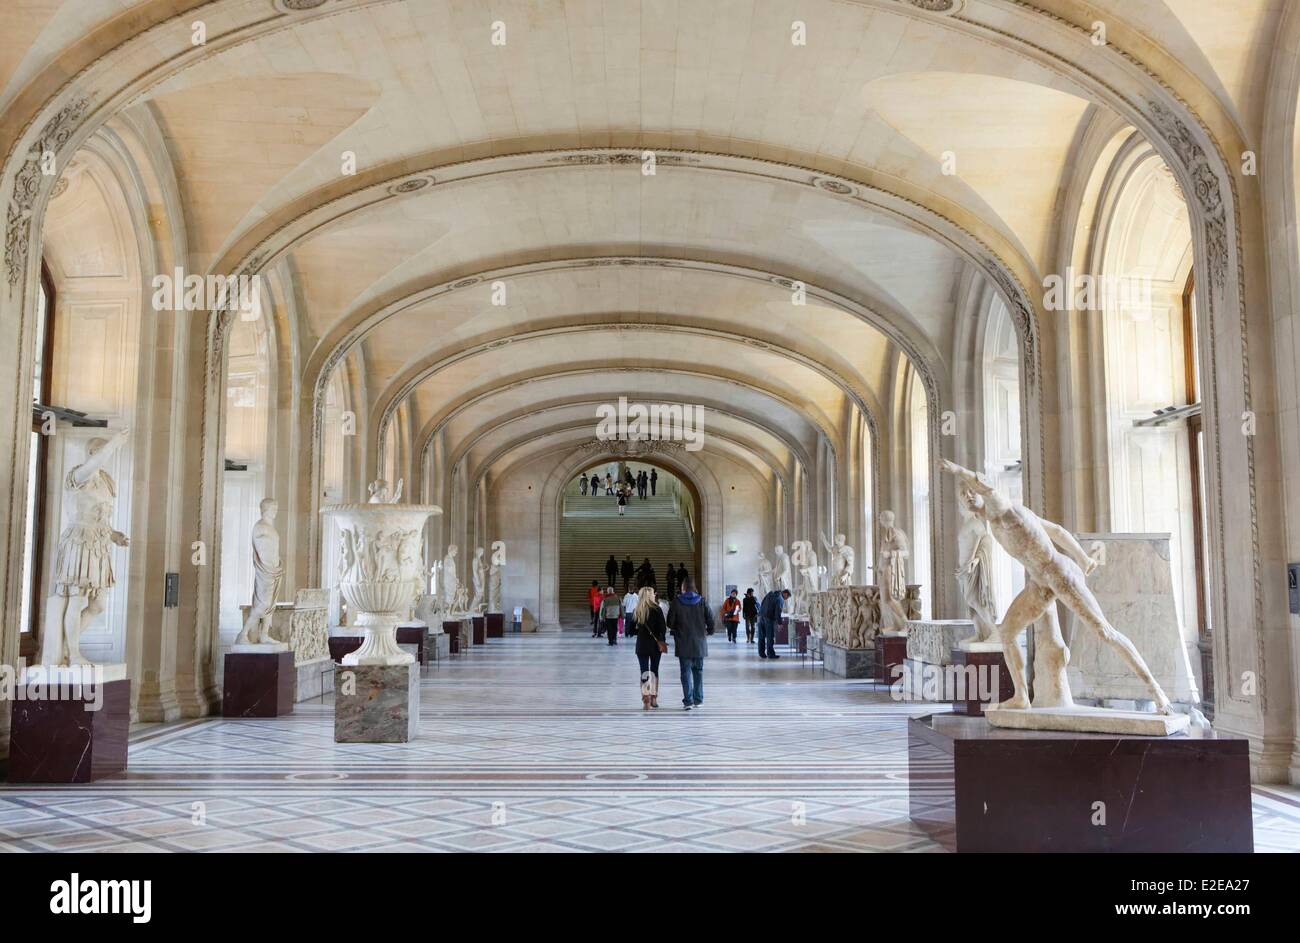 France, Paris, Louvre museum, vestibule Denon Stock Photo